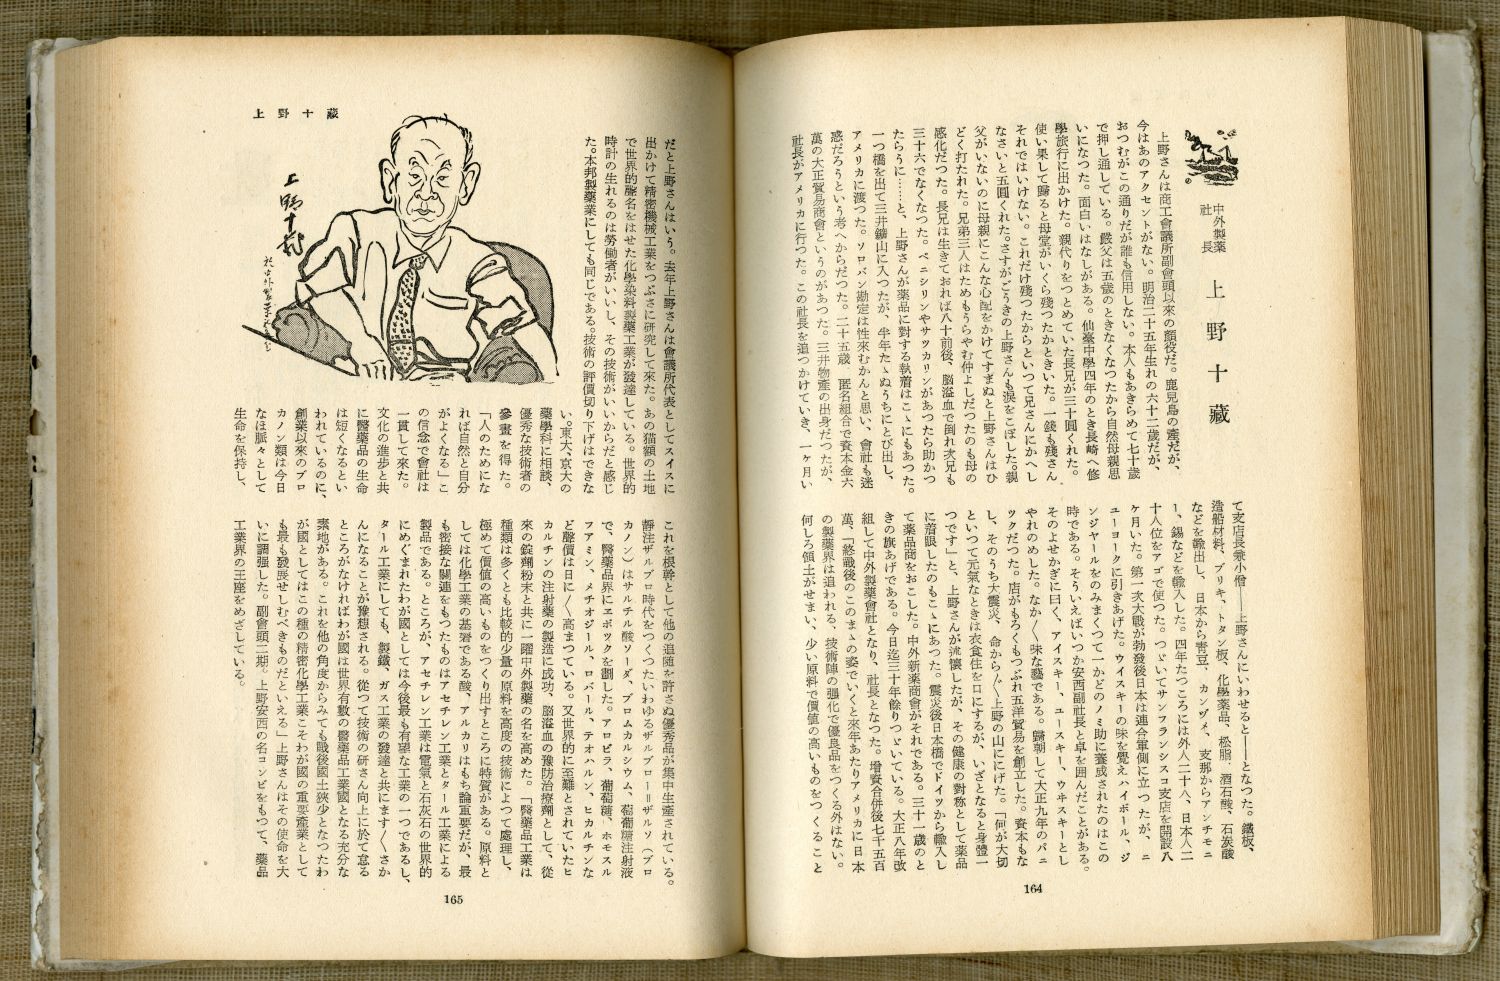 池田さぶろ『財界の顔』（1952年9月15日発行、講談社） のページから03